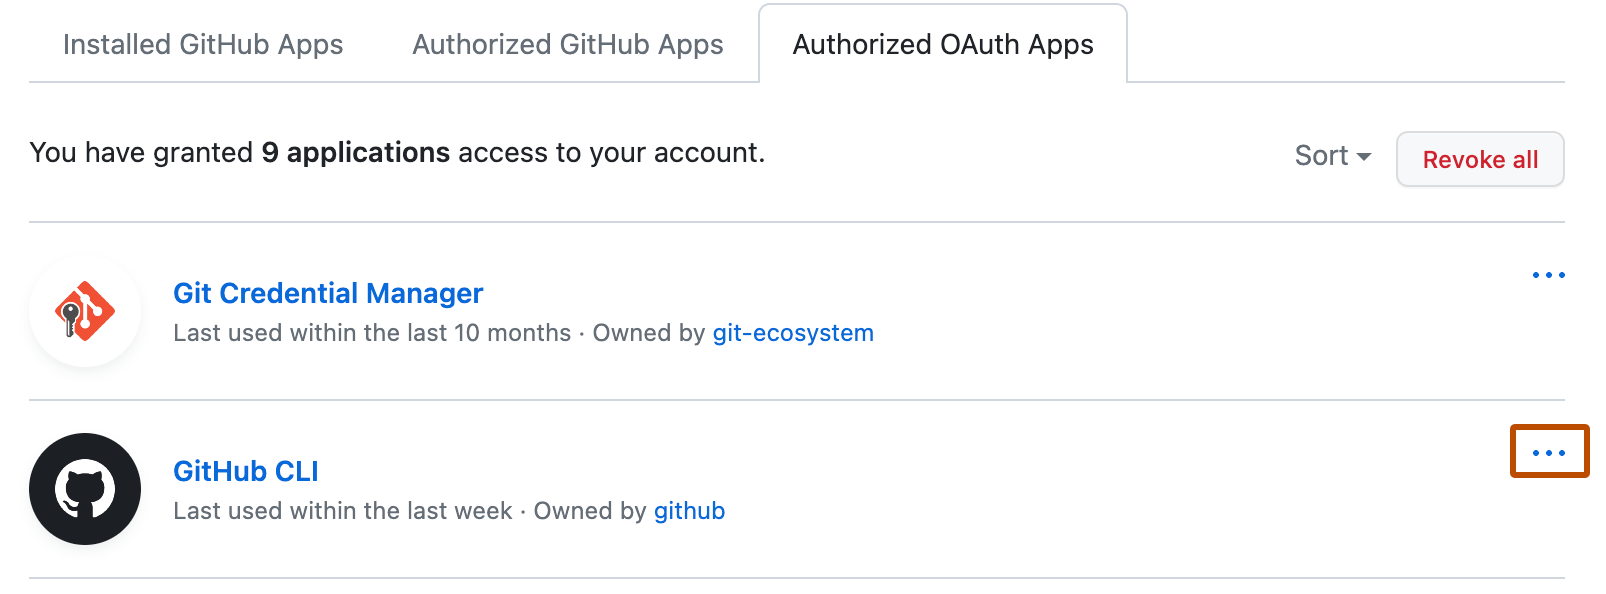 認可された OAuth Apps のリスト